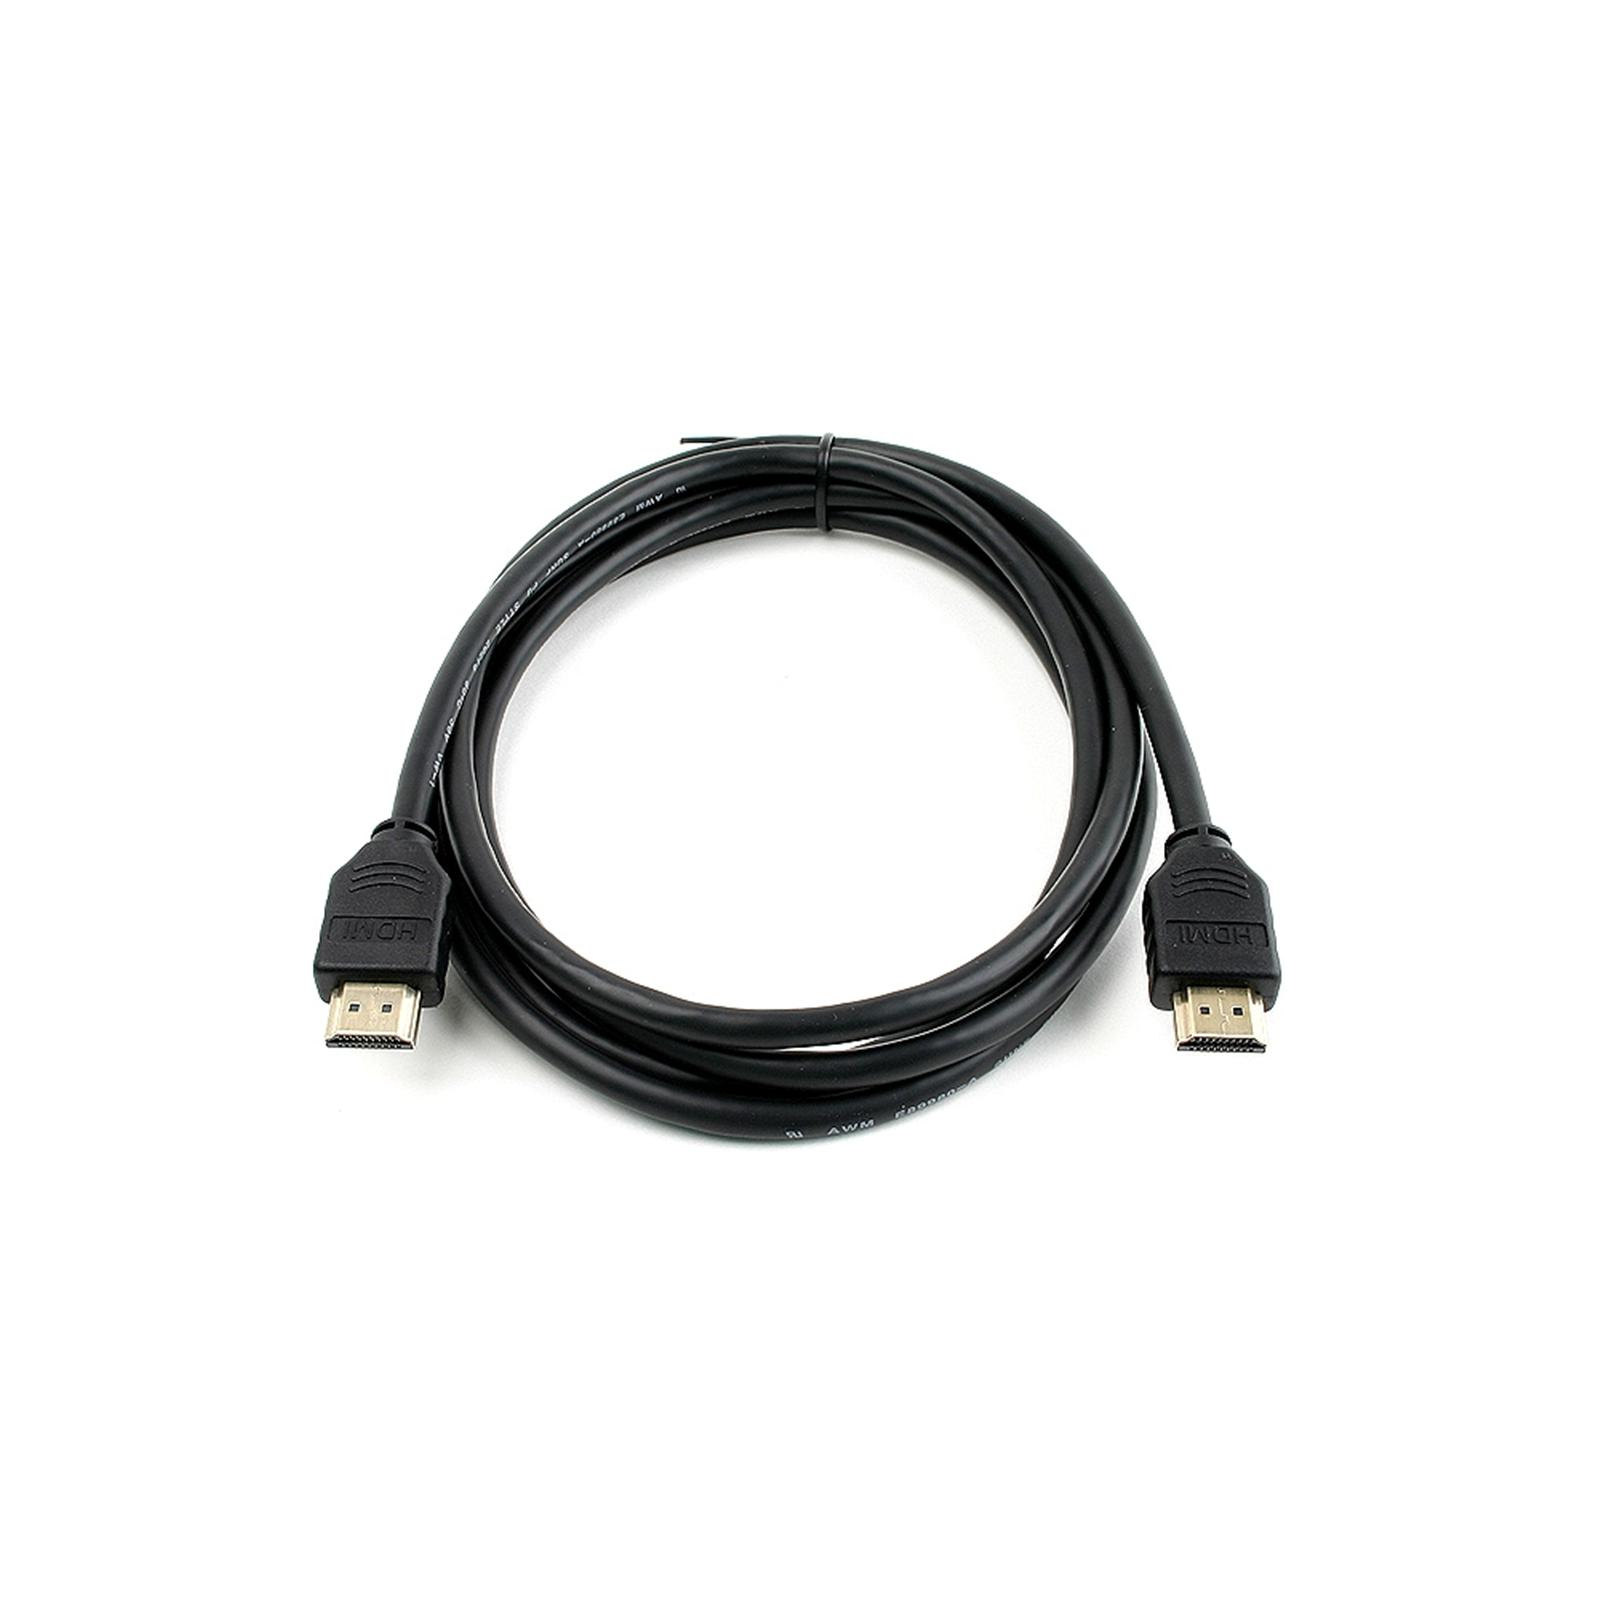 Кабель мультимедийный HDMI to HDMI 4.5m Patron (CAB-PN-HDMI-1.4-45)